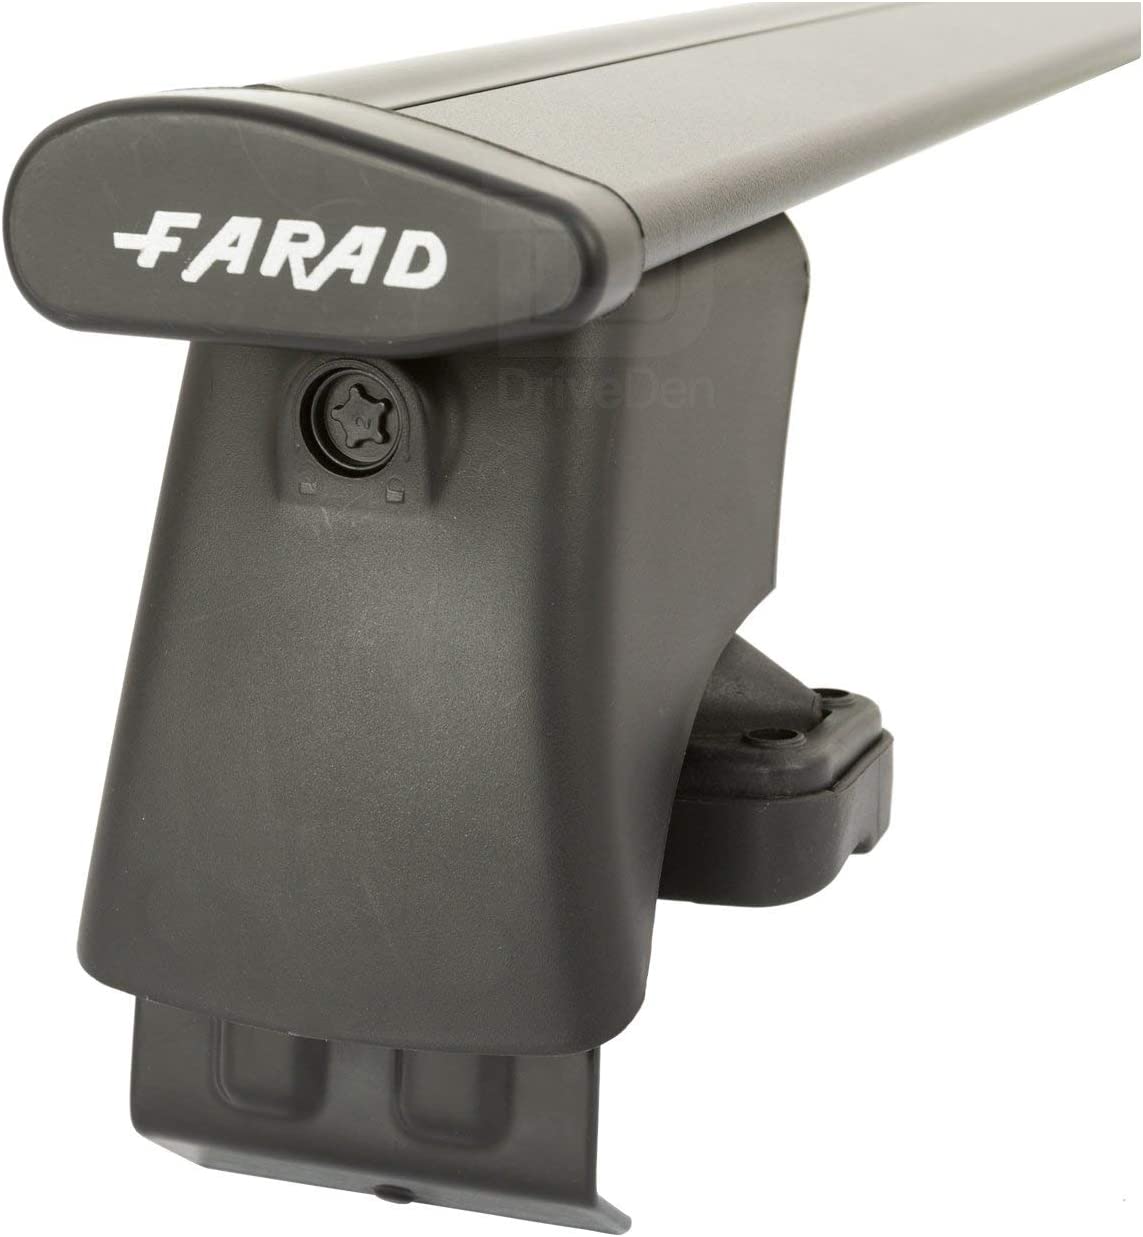 FARAD-Kit H2 per barre portatutto - Renault Scenic X Mod 2009-2016 (senza corrimano)